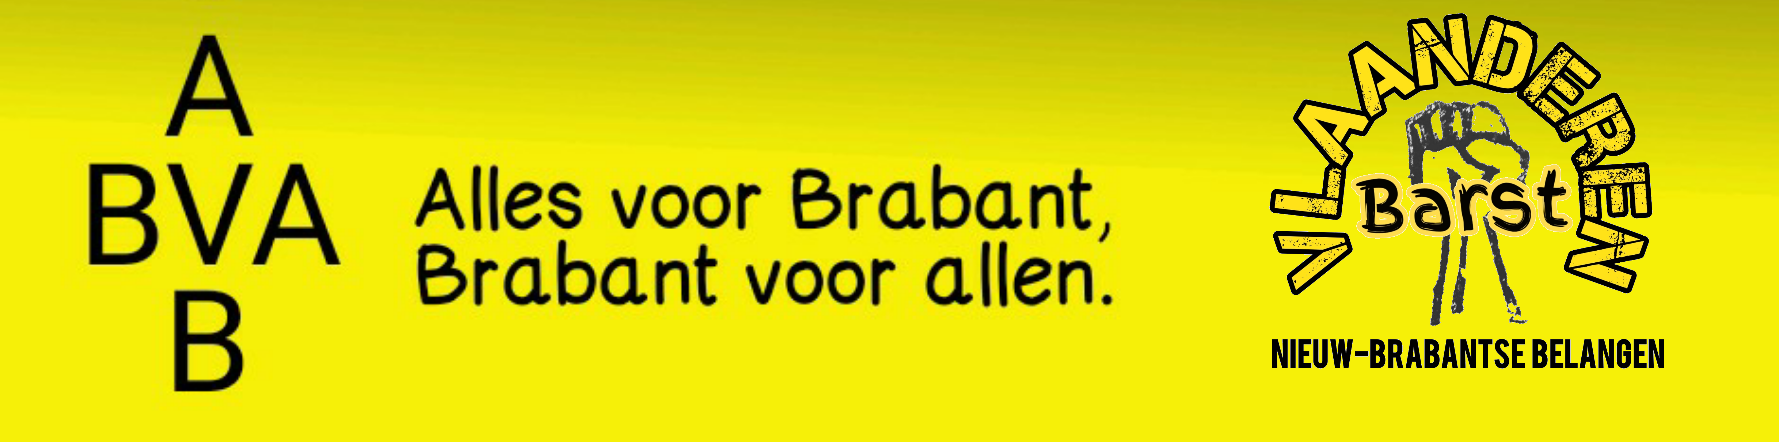 N-BB Nieuw Brabantse Belangen